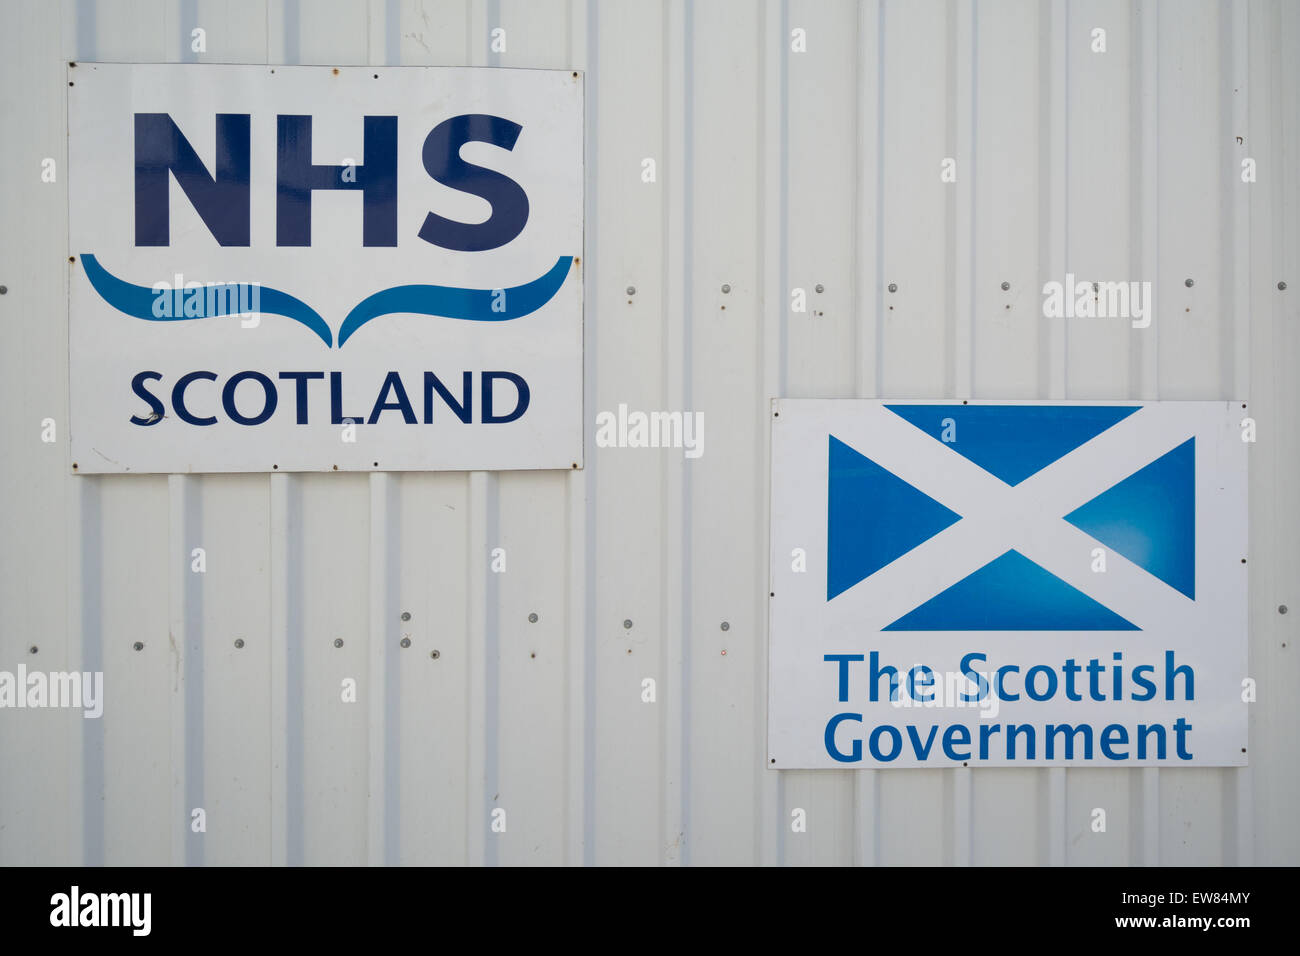 NHS Scotland et le gouvernement écossais signe érigé pendant la construction de la nouvelle Afrique du Glasgow University Hospital Banque D'Images